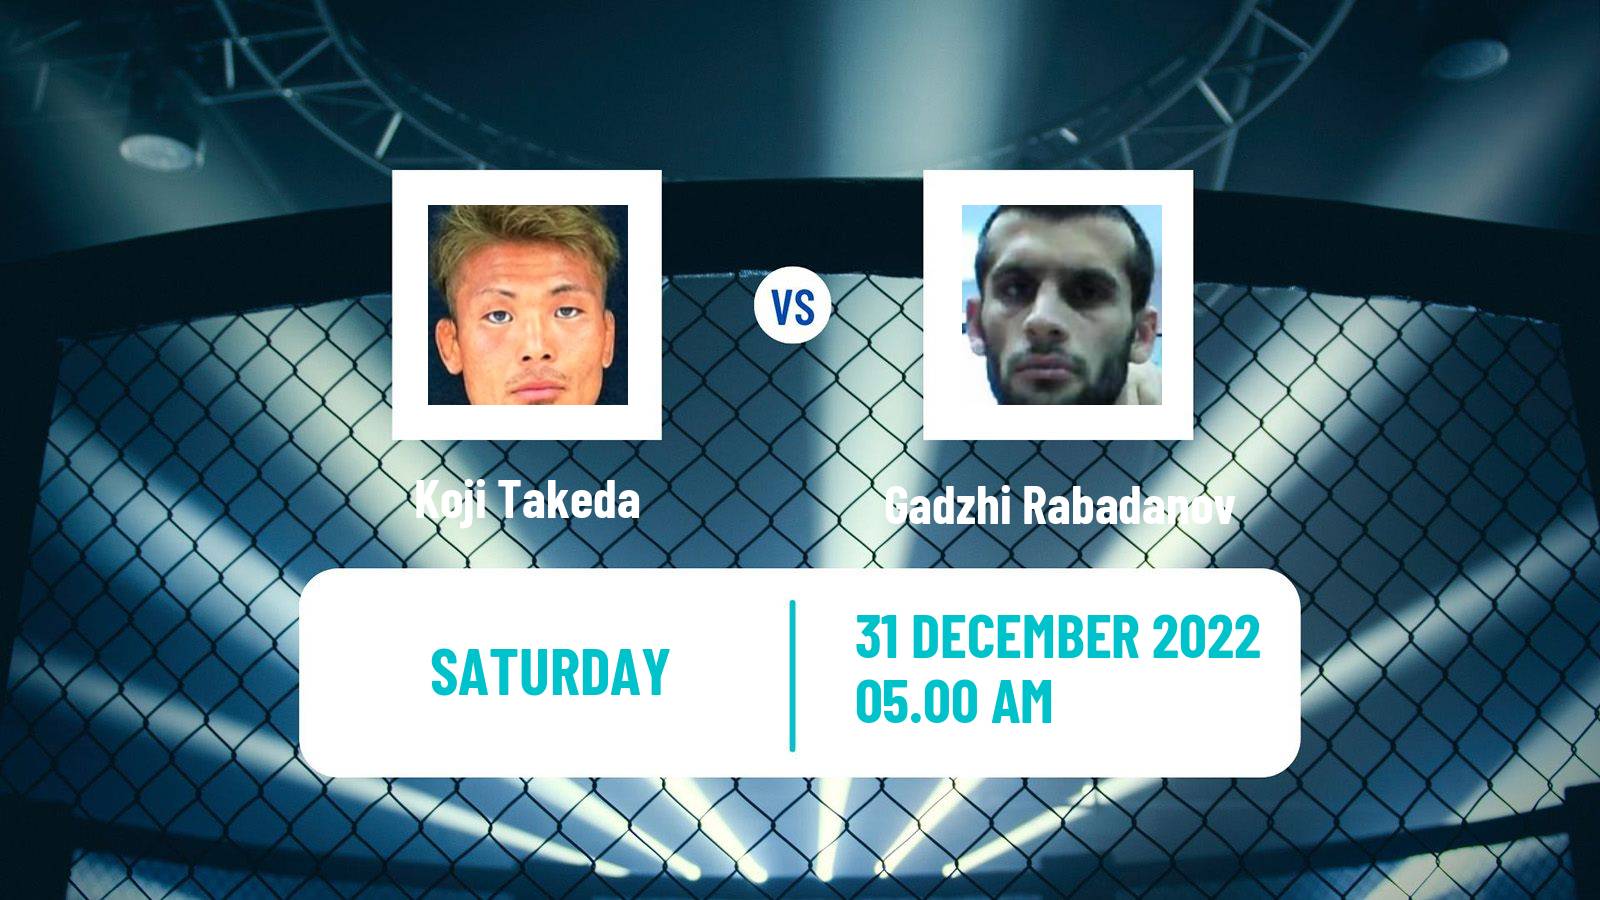 MMA MMA Koji Takeda - Gadzhi Rabadanov